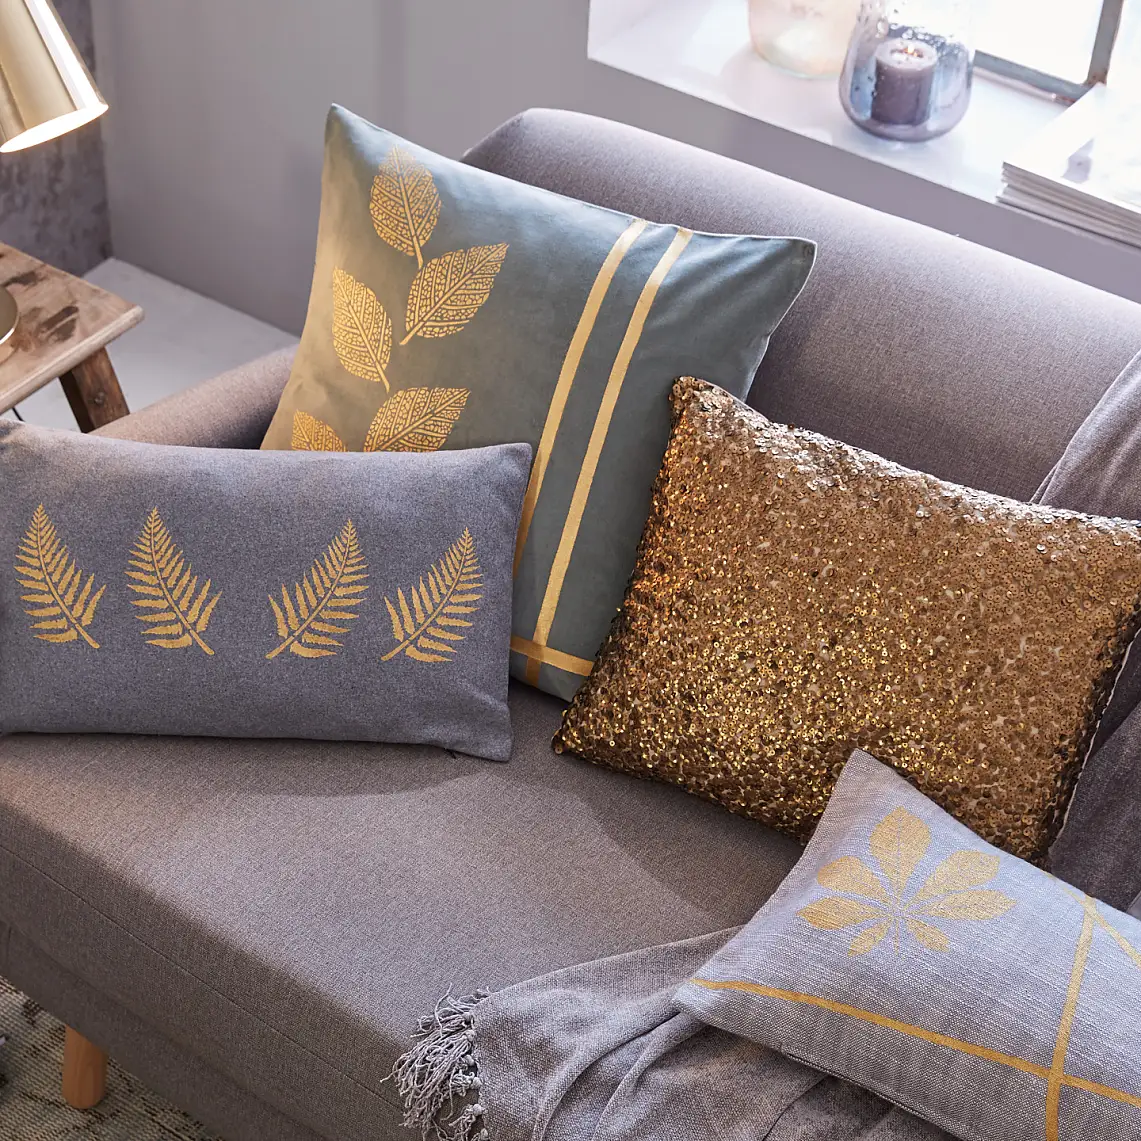 DIY Autumn Pillows